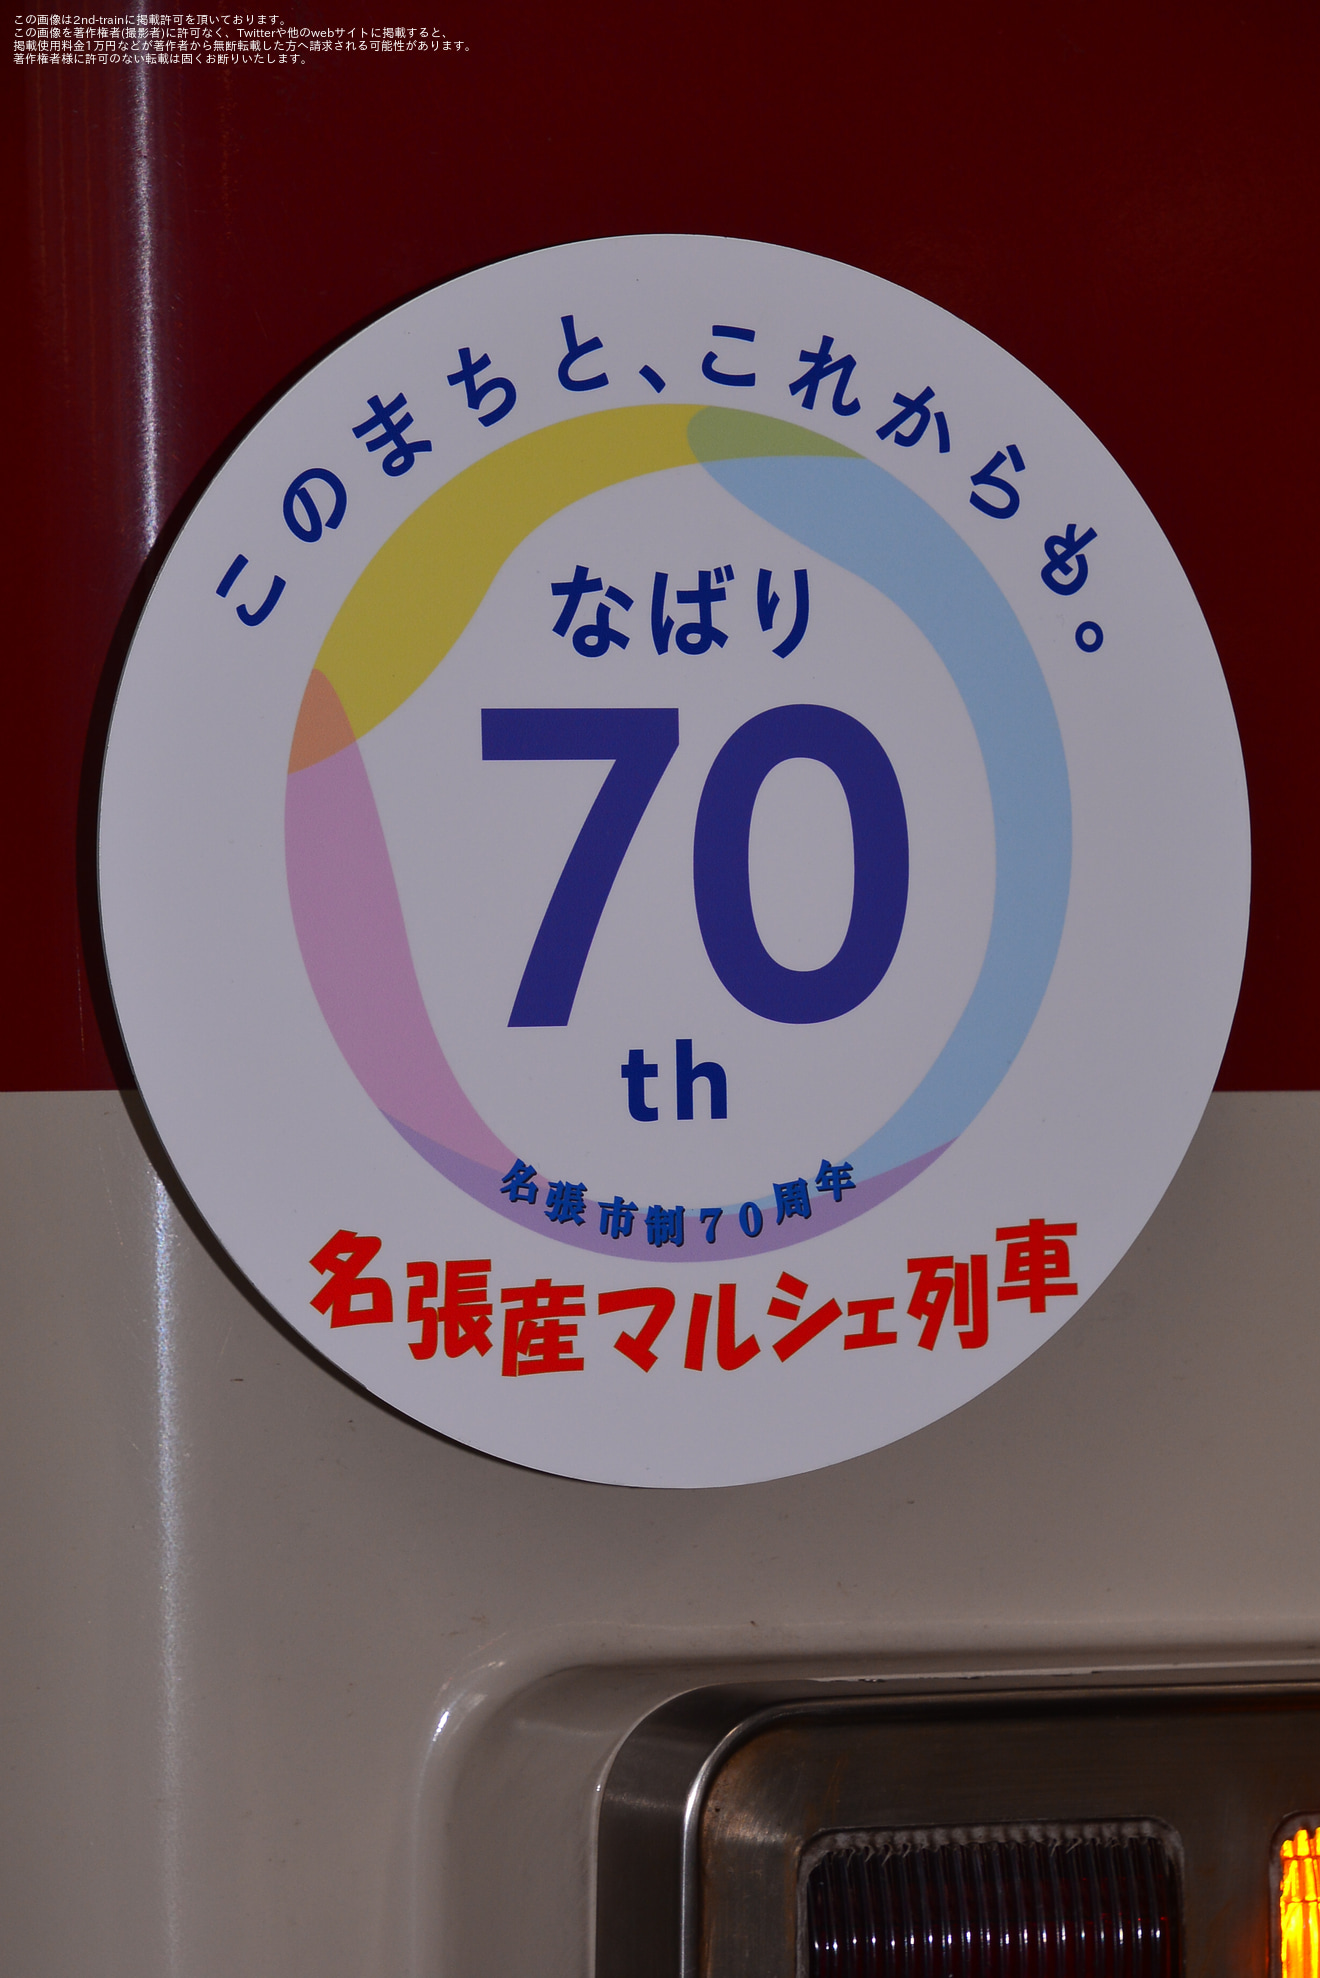 【近鉄】大阪上本町駅で名張マルシェを開催の拡大写真